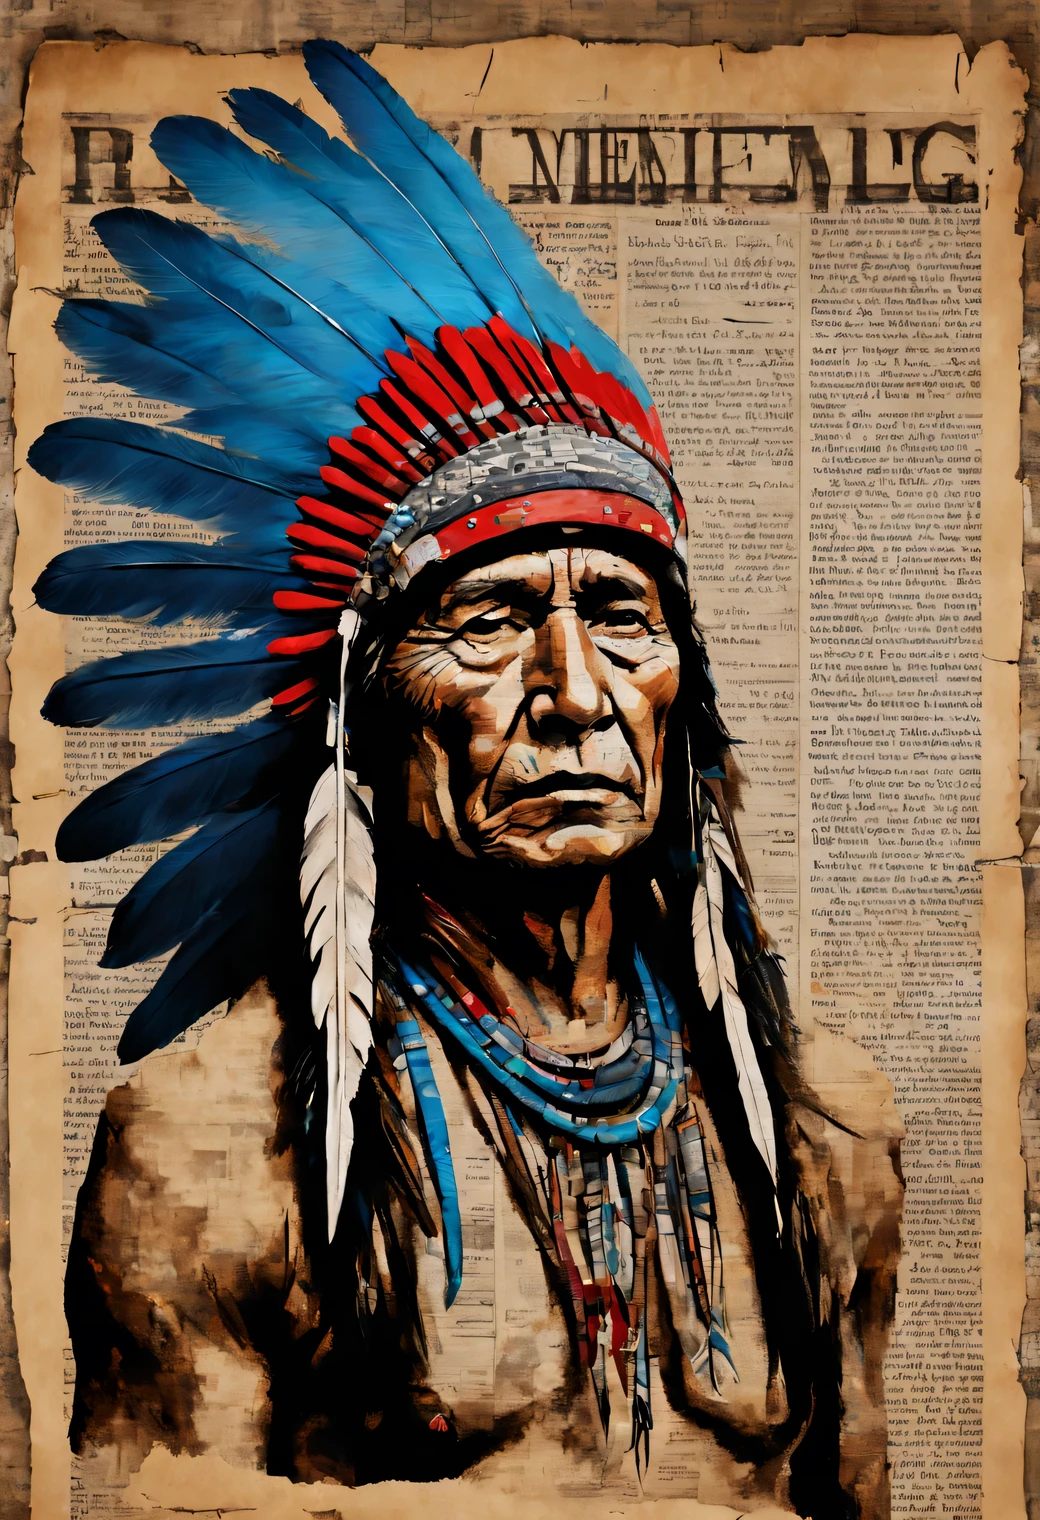 فن الرسم على الصحف., رسم اكريليك على جريدة قديمة, صورة لرجل أمريكي أصلي أحمر يرتدي غطاء رأس به ريش أزرق مرسوم فوق صحيفة قديمة, دقة عالية